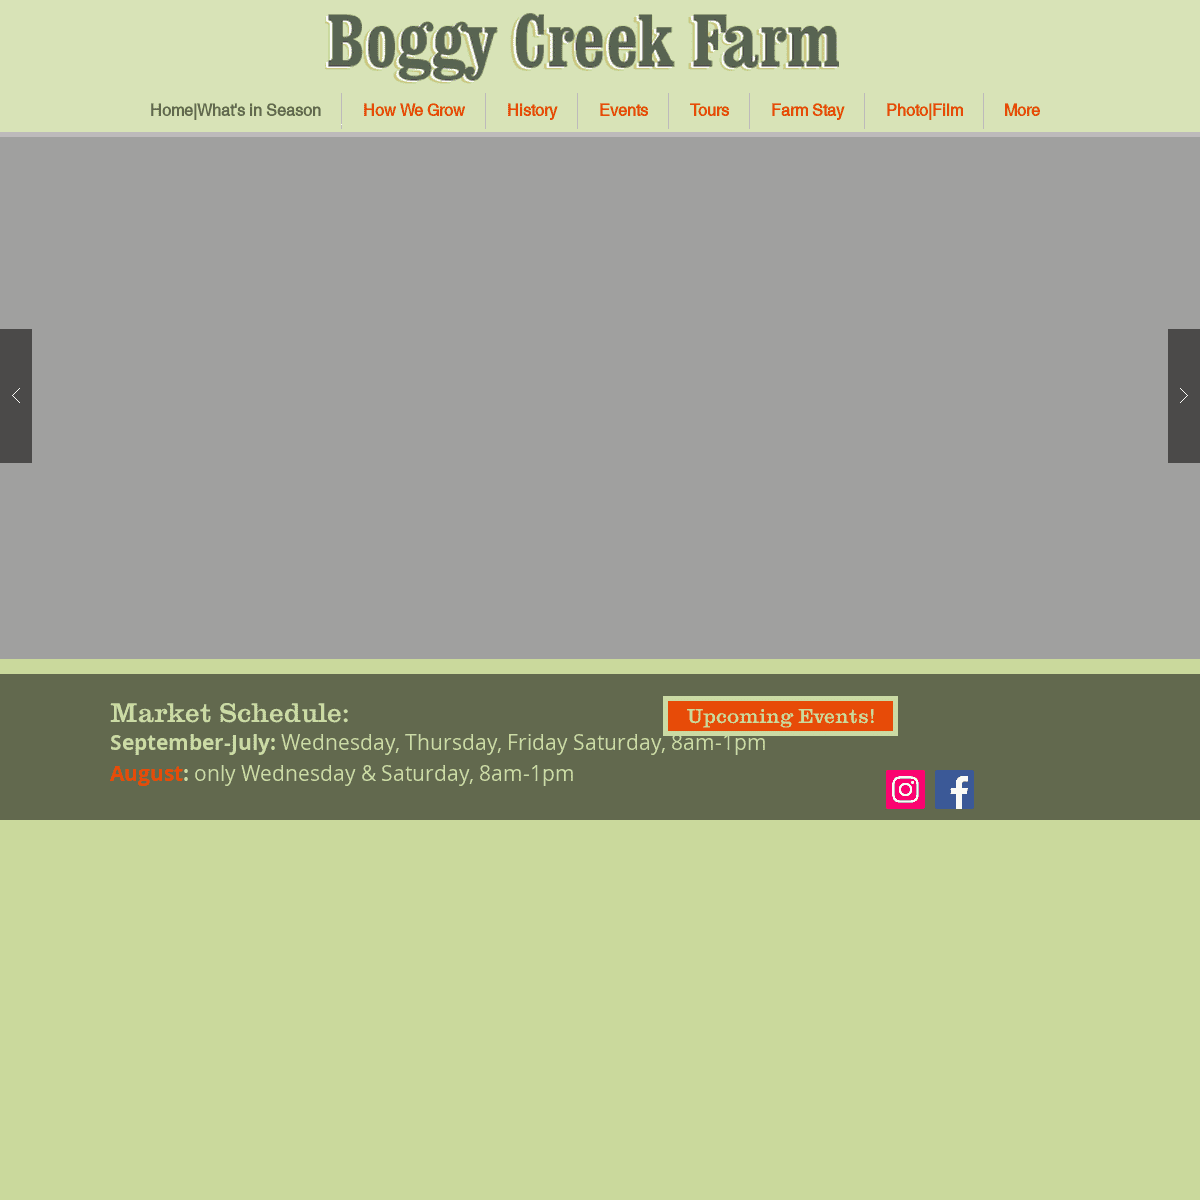 A complete backup of boggycreekfarm.com